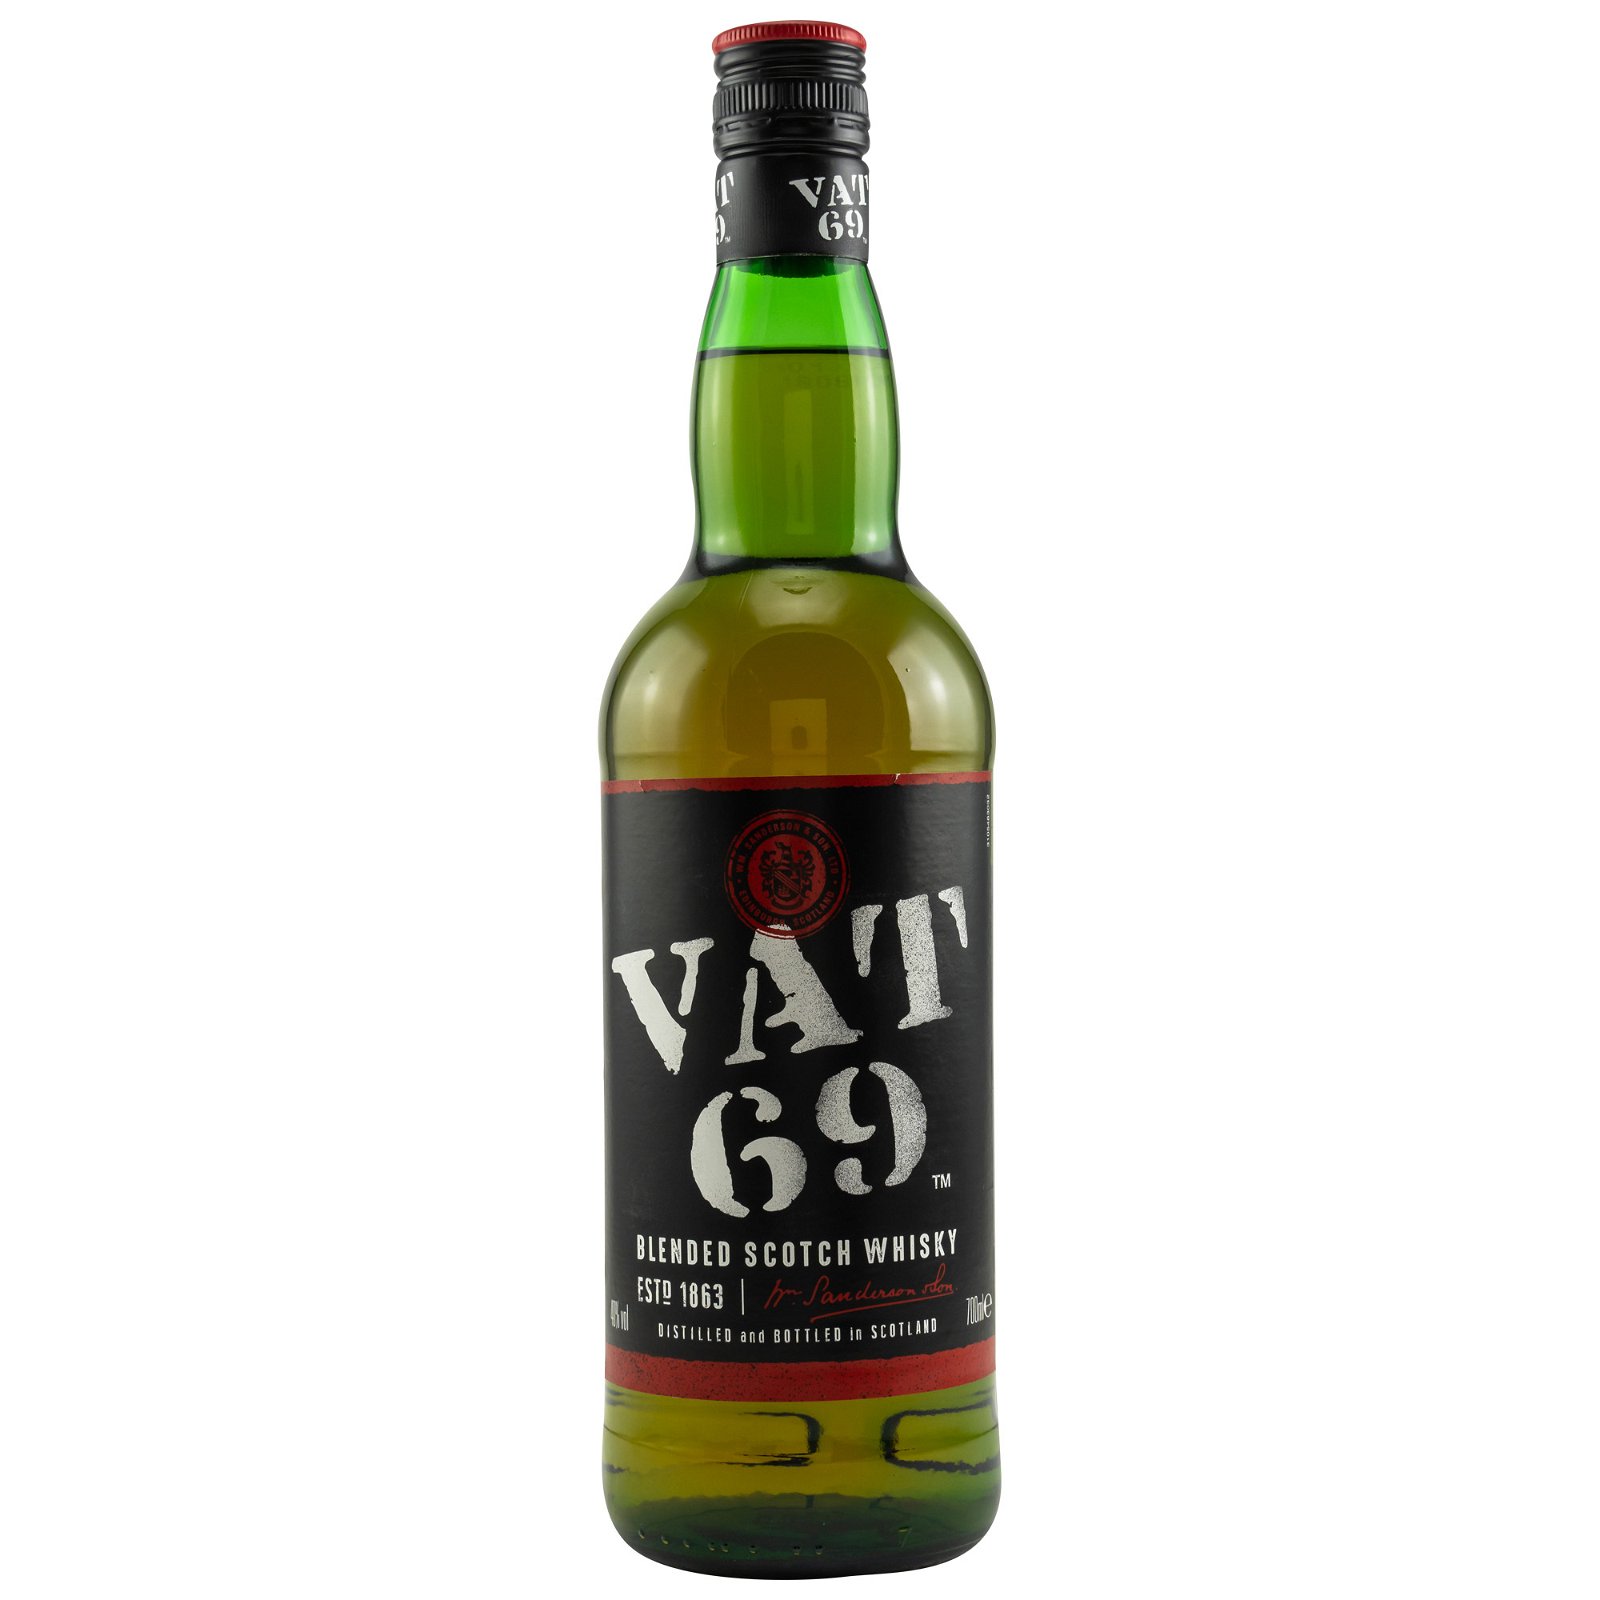 VAT 69 Blended Scotch